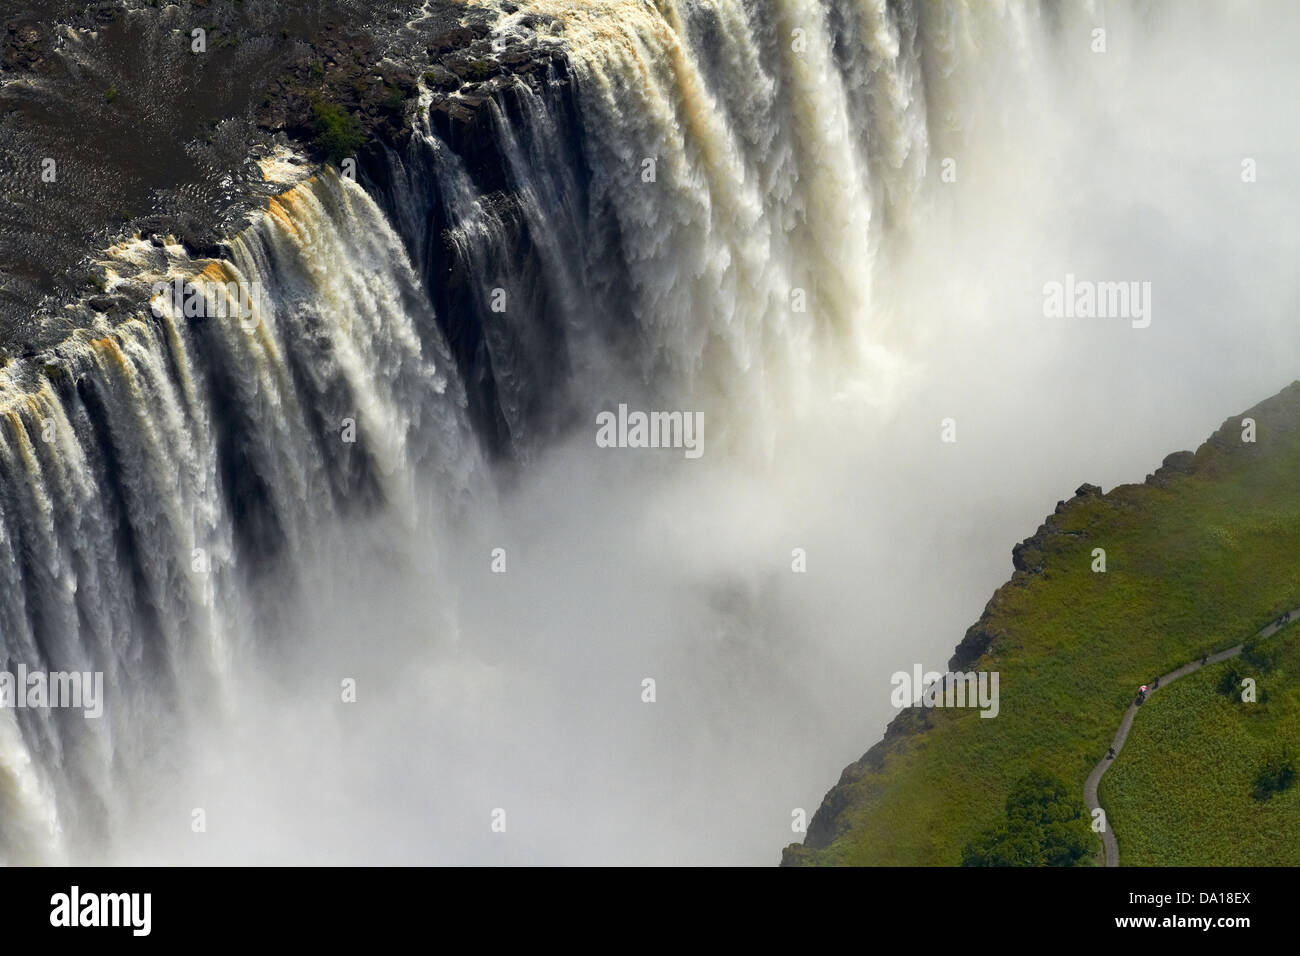 Les touristes sur l'affichage chemin Victoria Falls ou 'Mosi-oa-Tunya" (La fumée qui tonne), et Zambèze, Zambie / Zimbabwe Banque D'Images